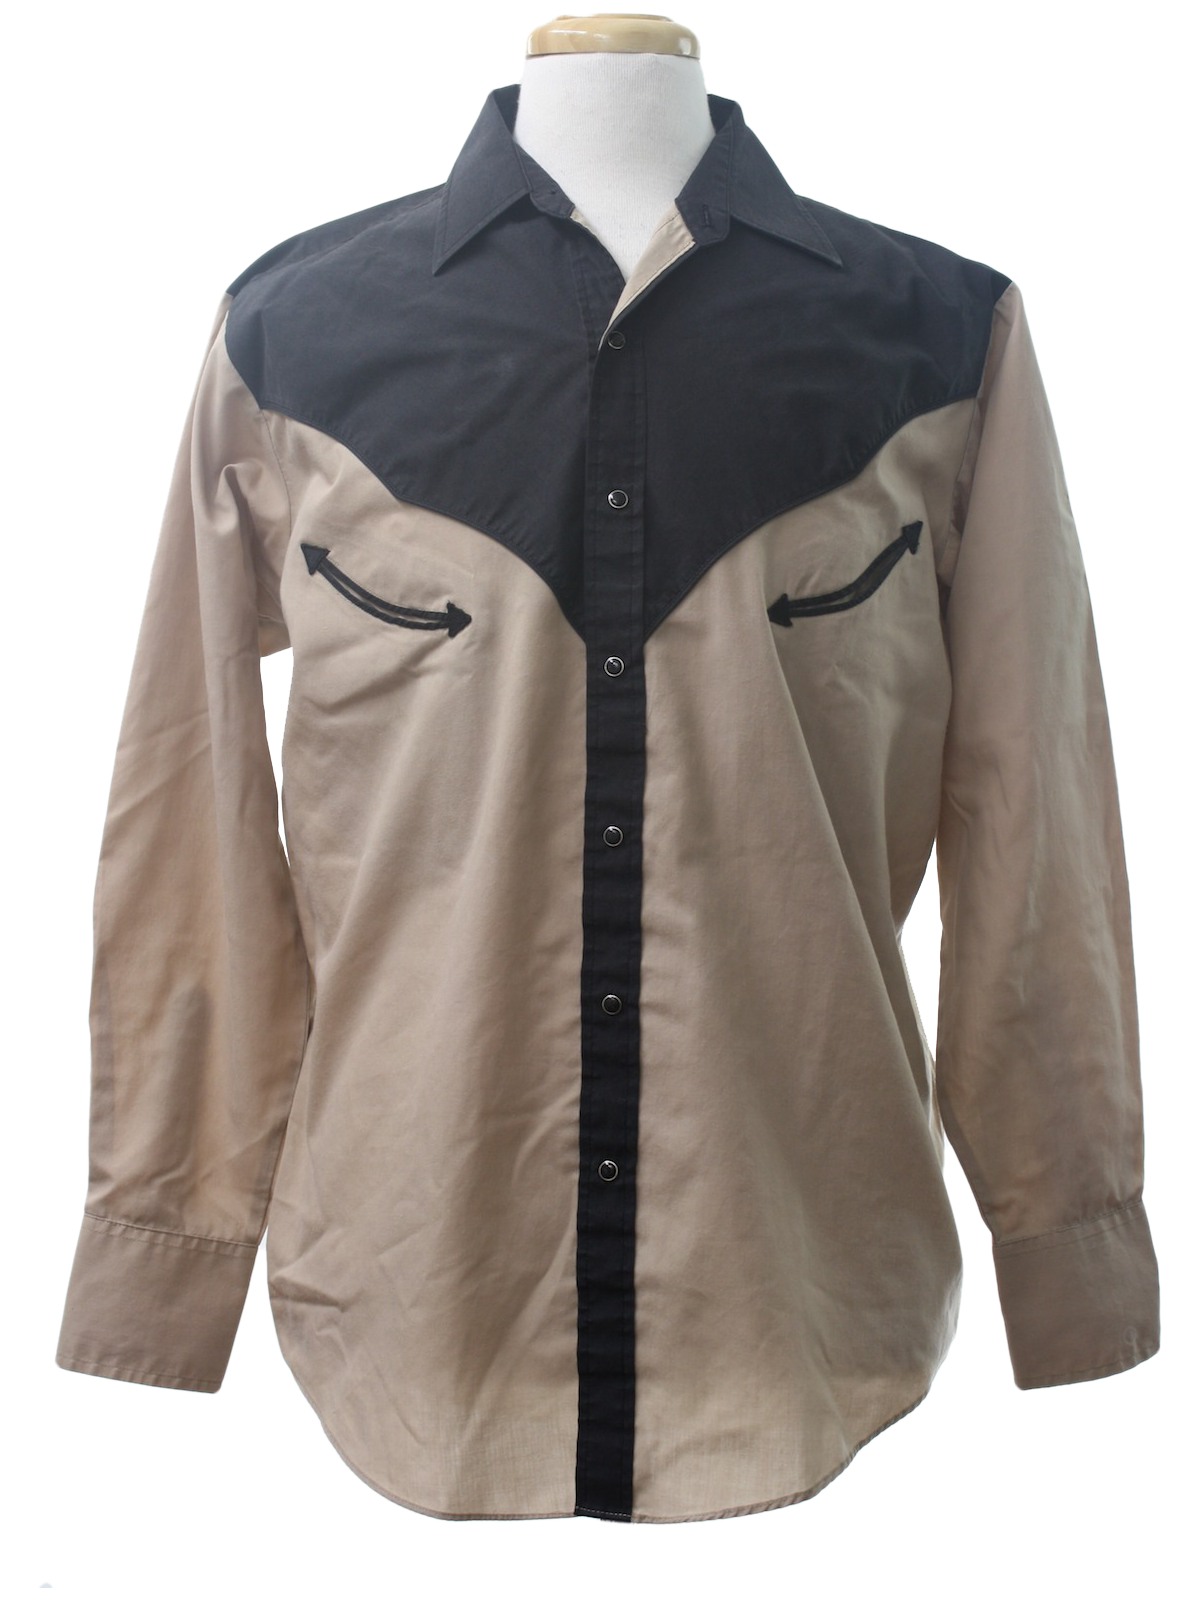 70s Western Shirt (Plains): 70s -Plains- Mens taupe and black cotton ...